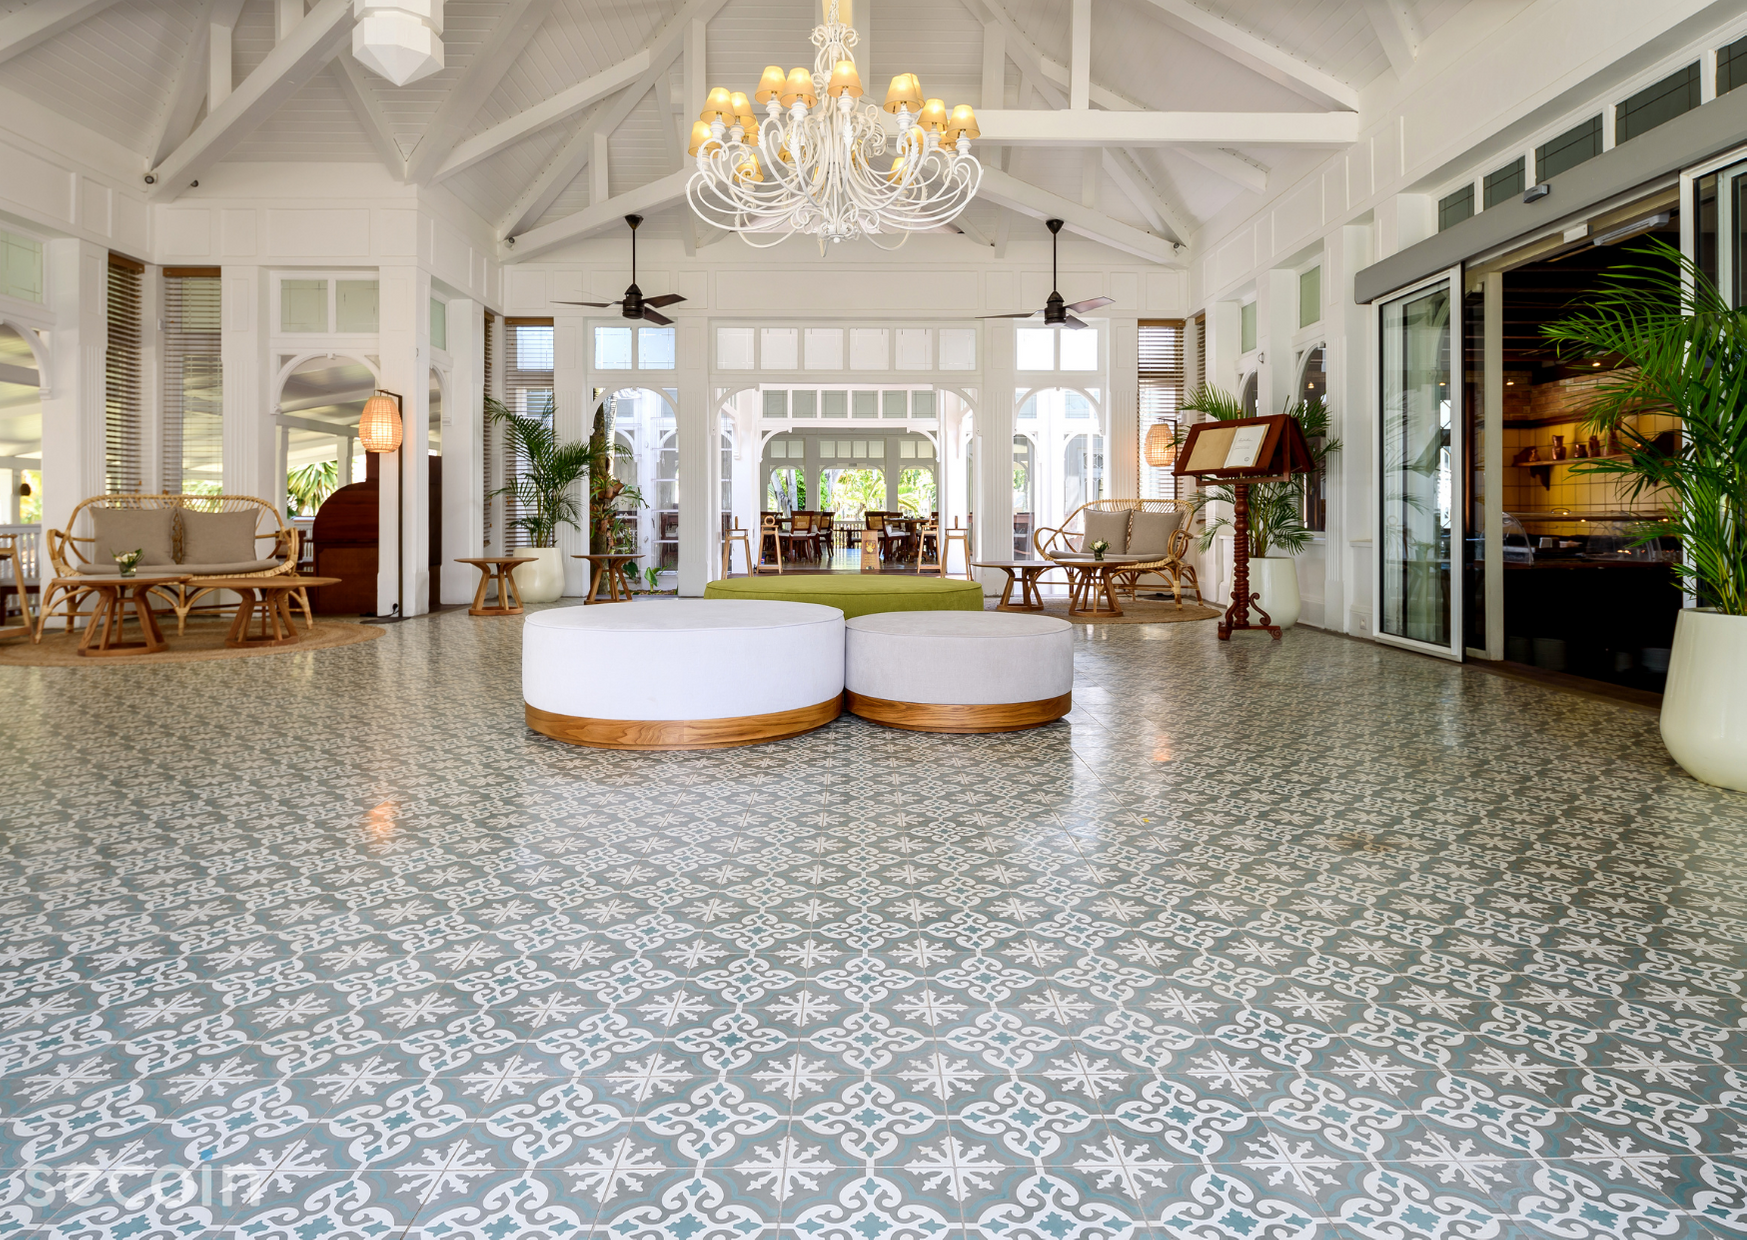 Gạch bông Secoin tại khu nghỉ dưỡng 5 sao Heritage Le Telfair, Mauritius,Gạch bông Secoin đã được sử dụng để làm vật liệu trang trí nền chủ đạo cho khu nghỉ dưỡng này nhằm tạo ra một không gian sang trọng đẳng cấp, đáp ứng được nhu cầu thẩm mỹ cao của khách hàng là giới thượng lưu đến nghỉ dưỡng.